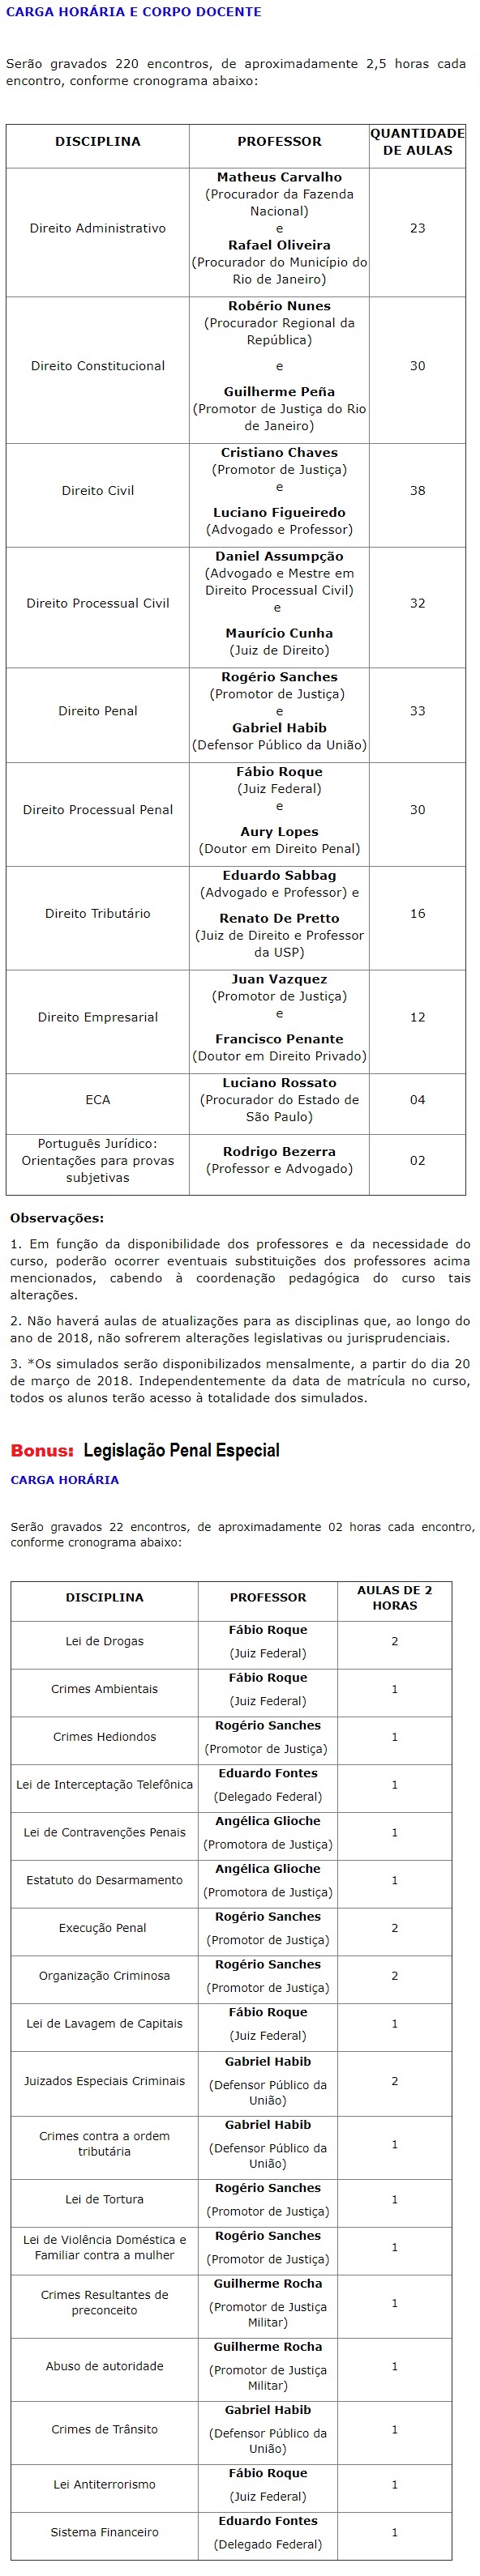 Rateio Carreiras Jurídicas Legislação Penal Especial 2018 - C 6